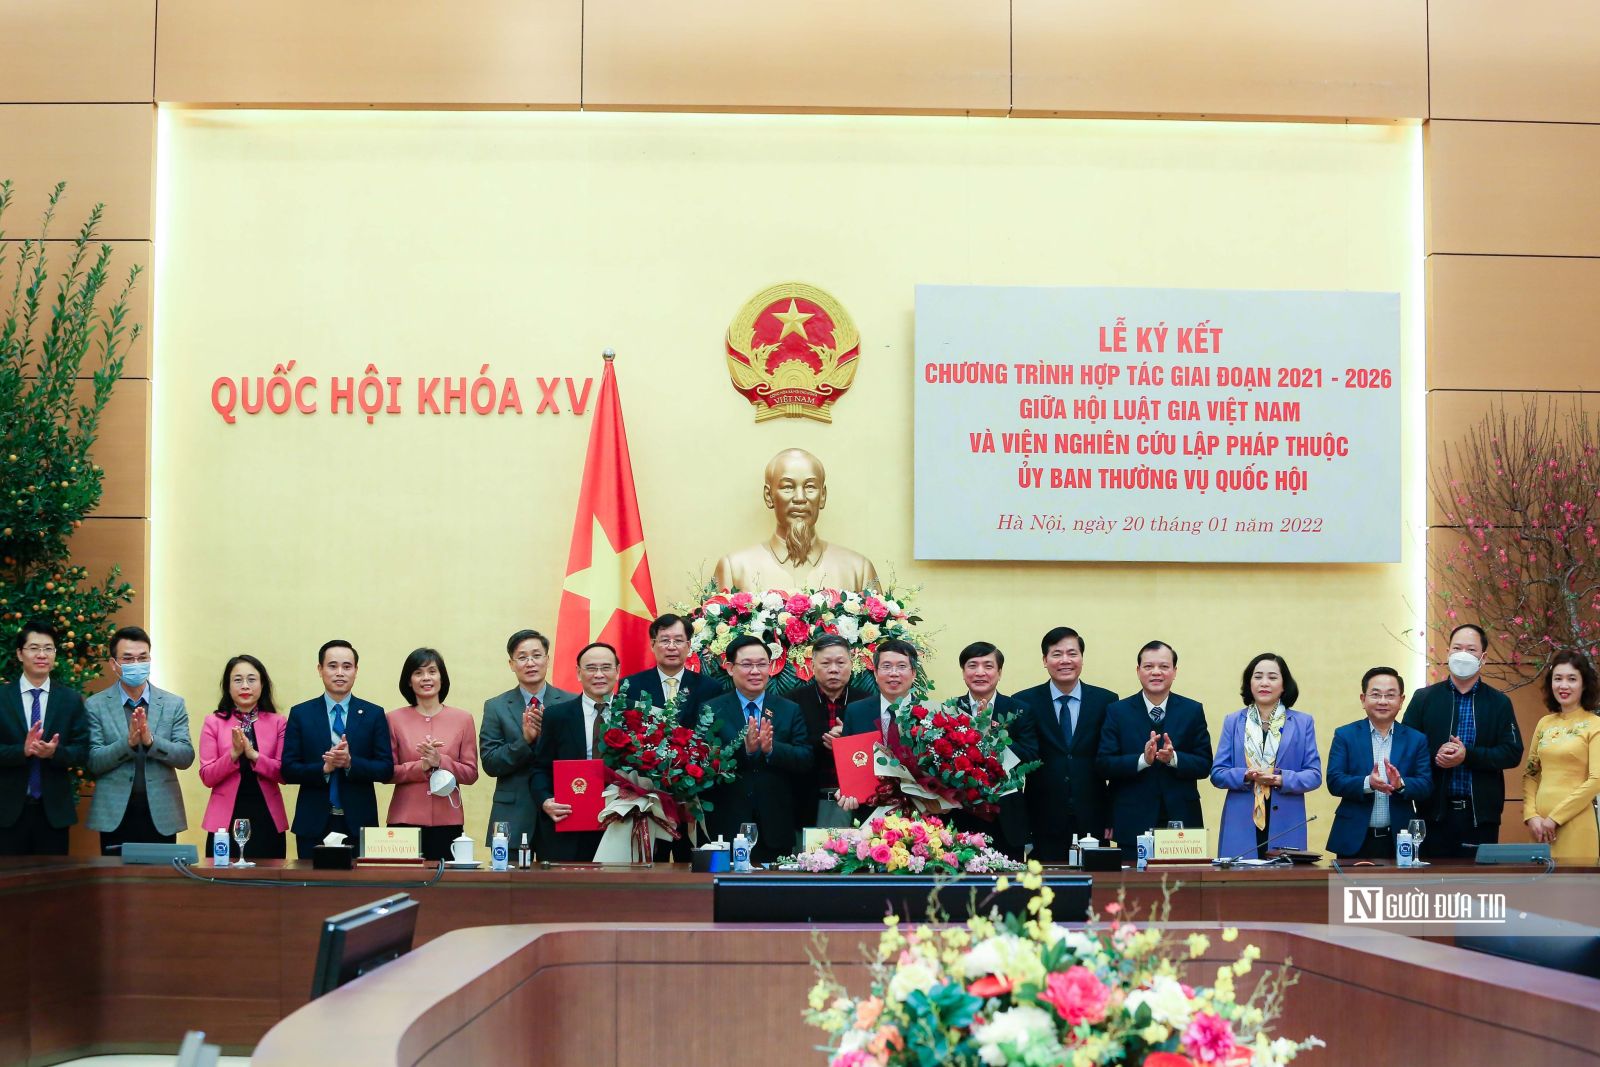 Tích cực trong tham gia xây dựng và hoàn thiện Nhà nước pháp quyền xã hội chủ nghĩa Việt Nam